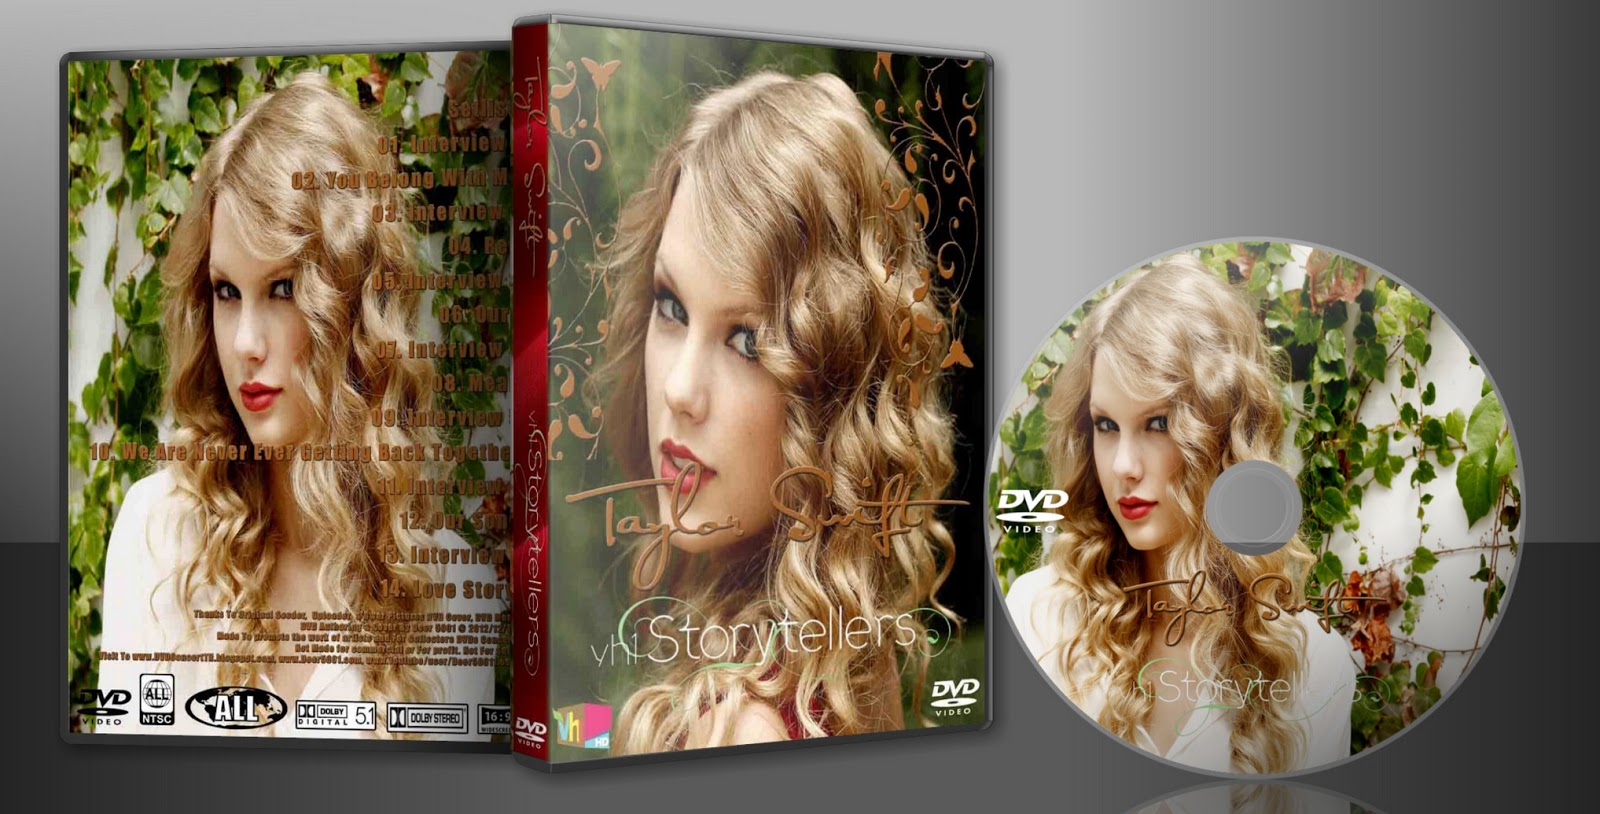 http://1.bp.blogspot.com/-hYc2ePMEzaM/UMVf0CgNSBI/AAAAAAAACcg/yyCfpRmECZU/s1600/DVD+Taylor+Swift+2012+VH1+Storyellers.jpg